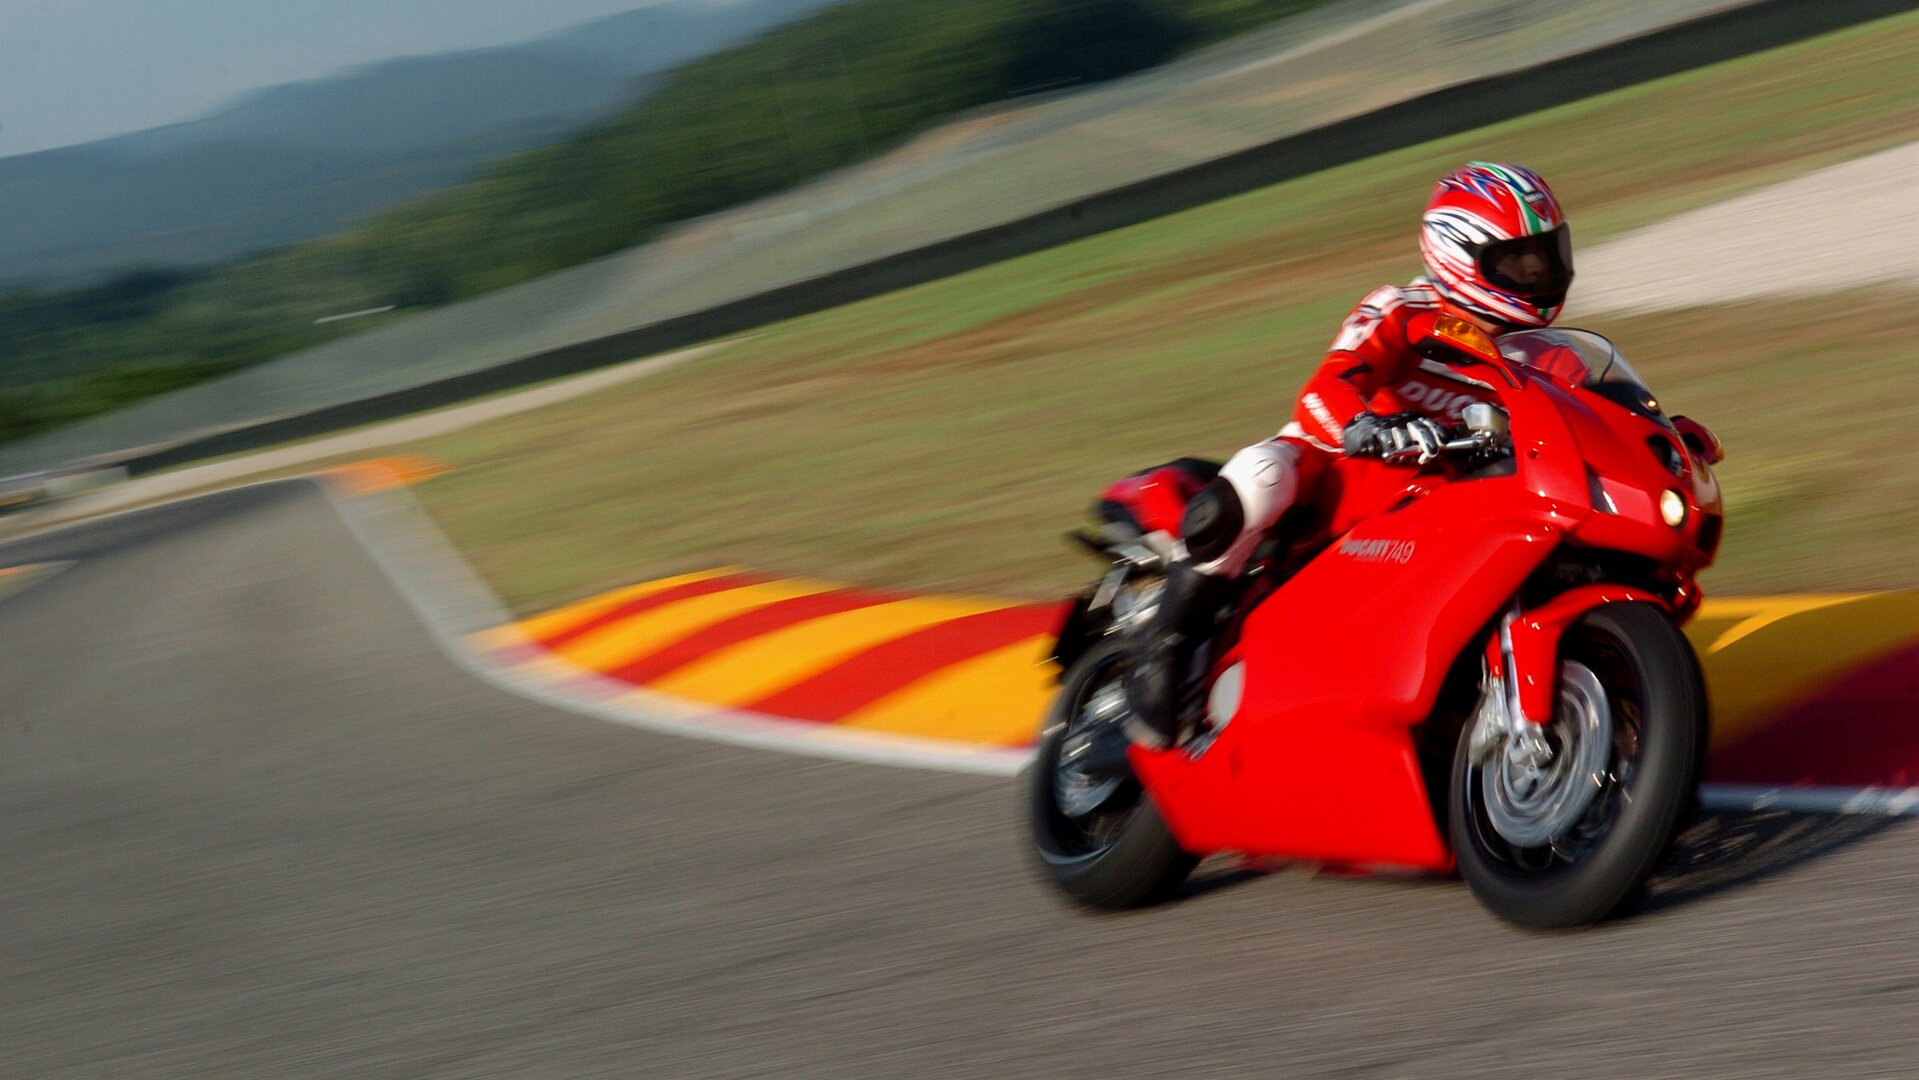 Moto del día: Ducati 749